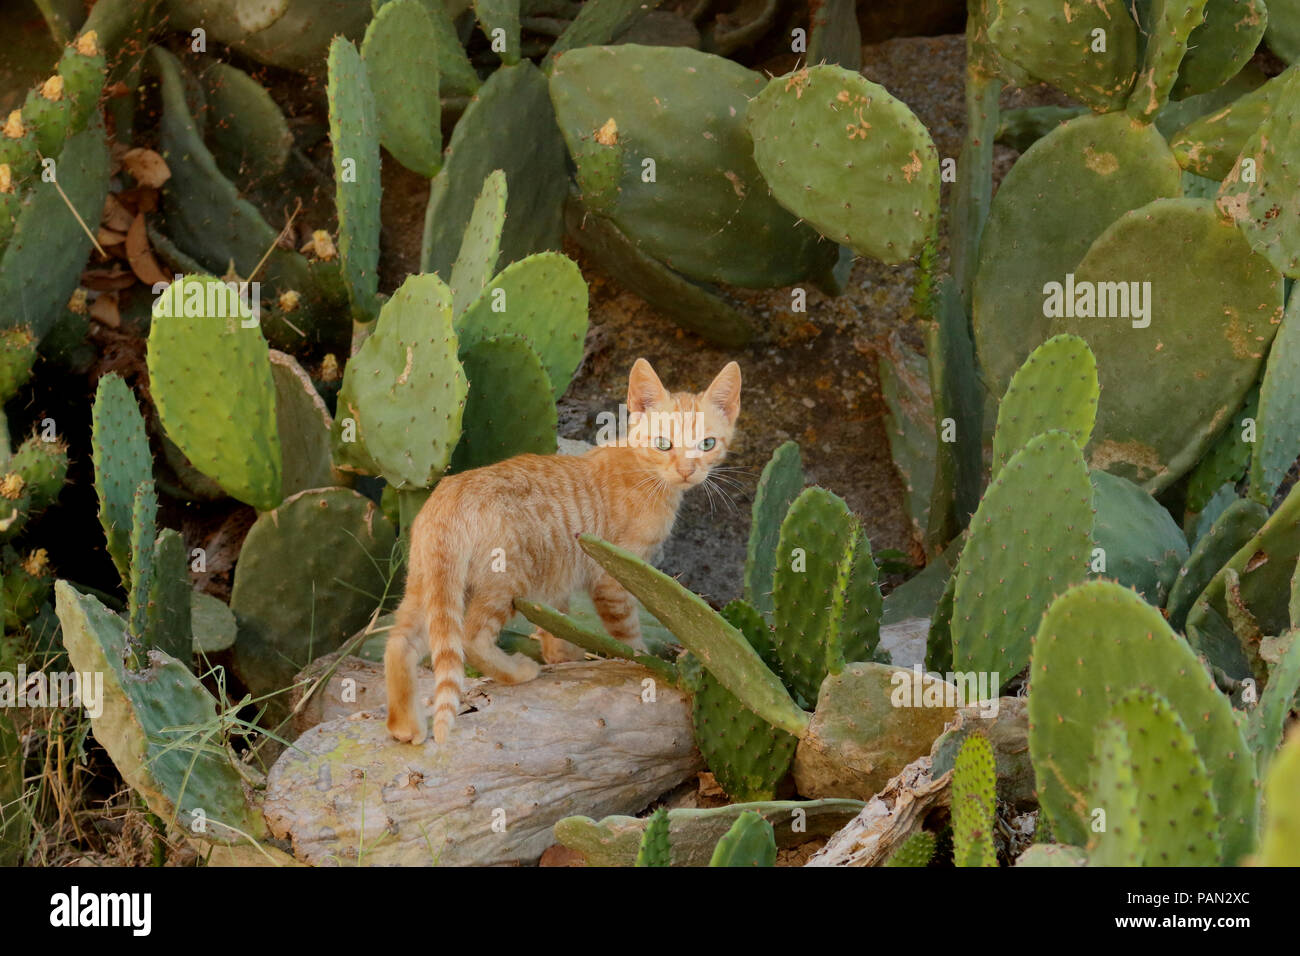 La rue young cat, 3 mois, debout entre un cactus Banque D'Images